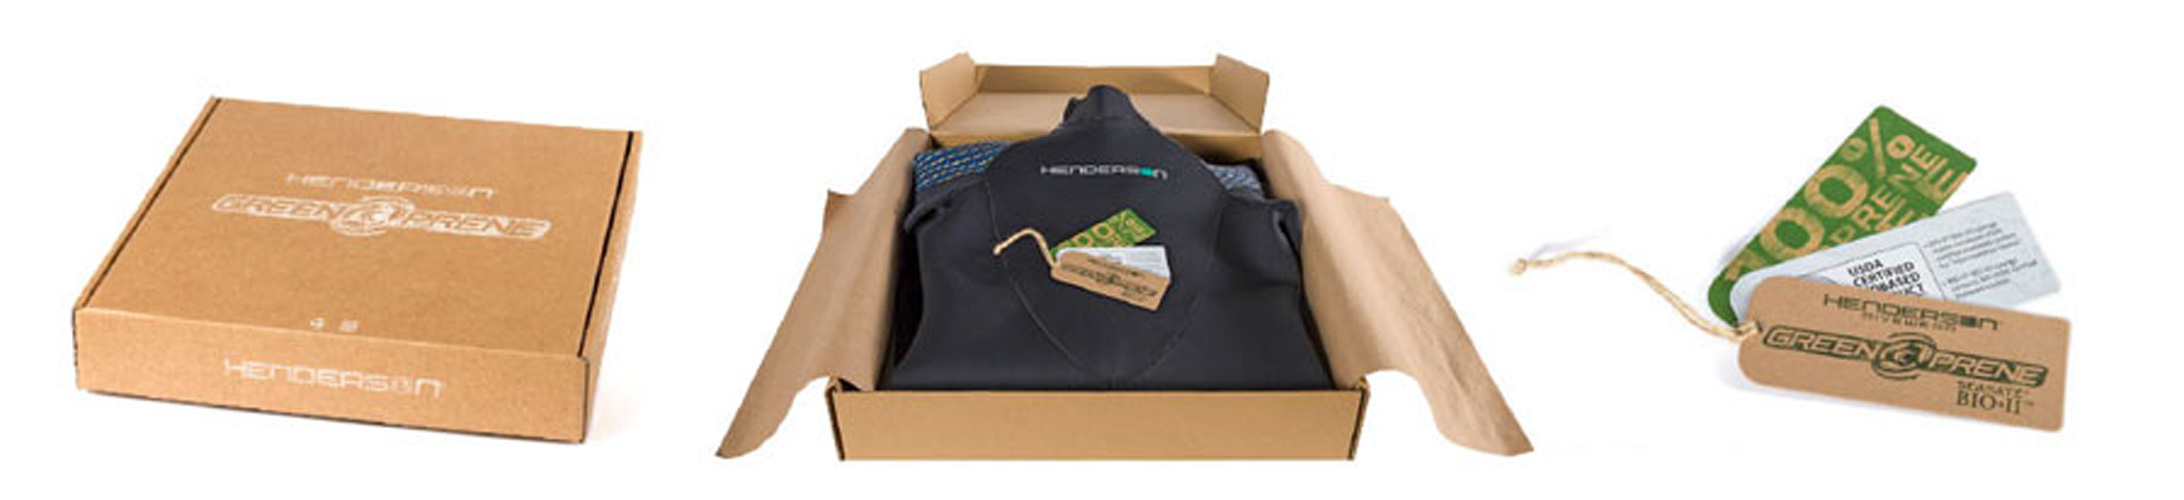 the Henderson Greenprene wetsuit packaging